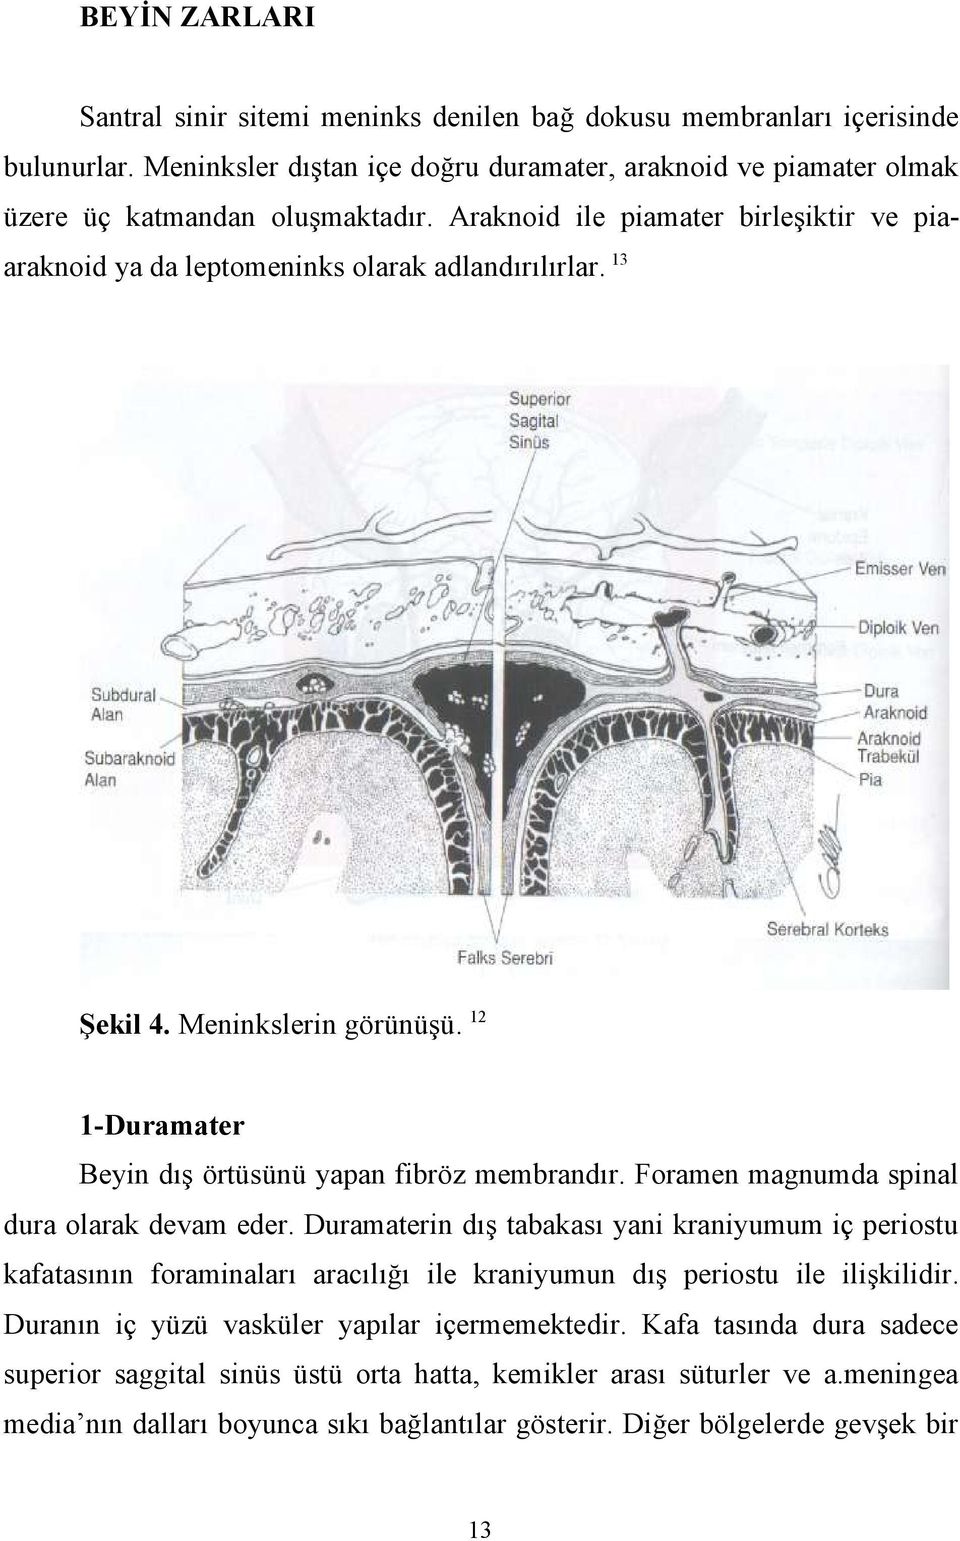 Foramen magnumda spinal dura olarak devam eder. Duramaterin dış tabakası yani kraniyumum iç periostu kafatasının foraminaları aracılığı ile kraniyumun dış periostu ile ilişkilidir.